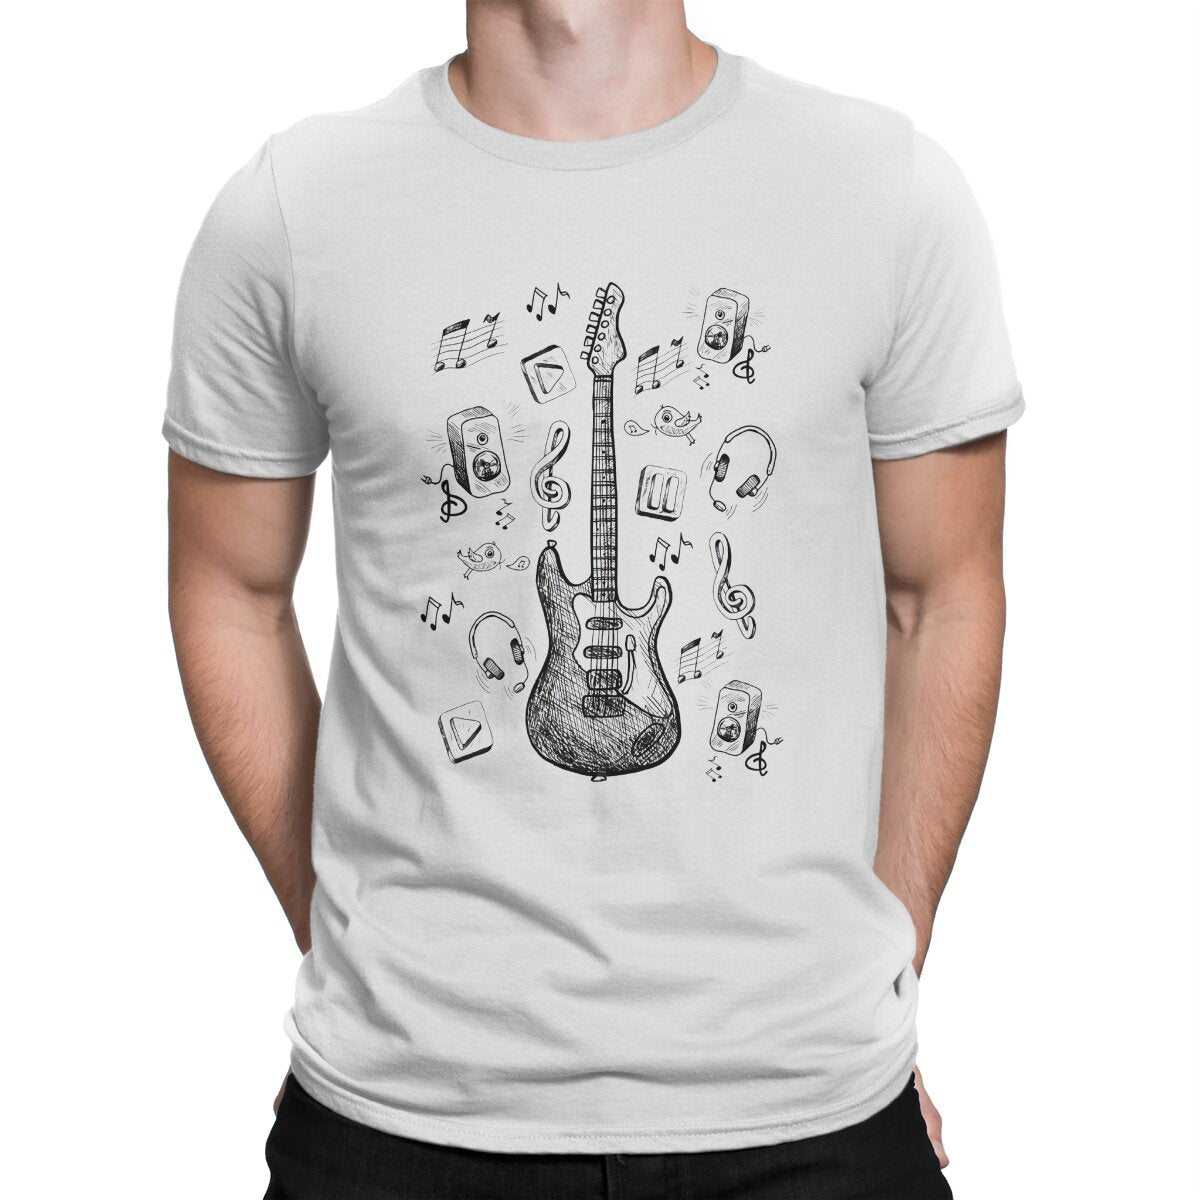 Bass Classic Cotton T-Shirt Tee